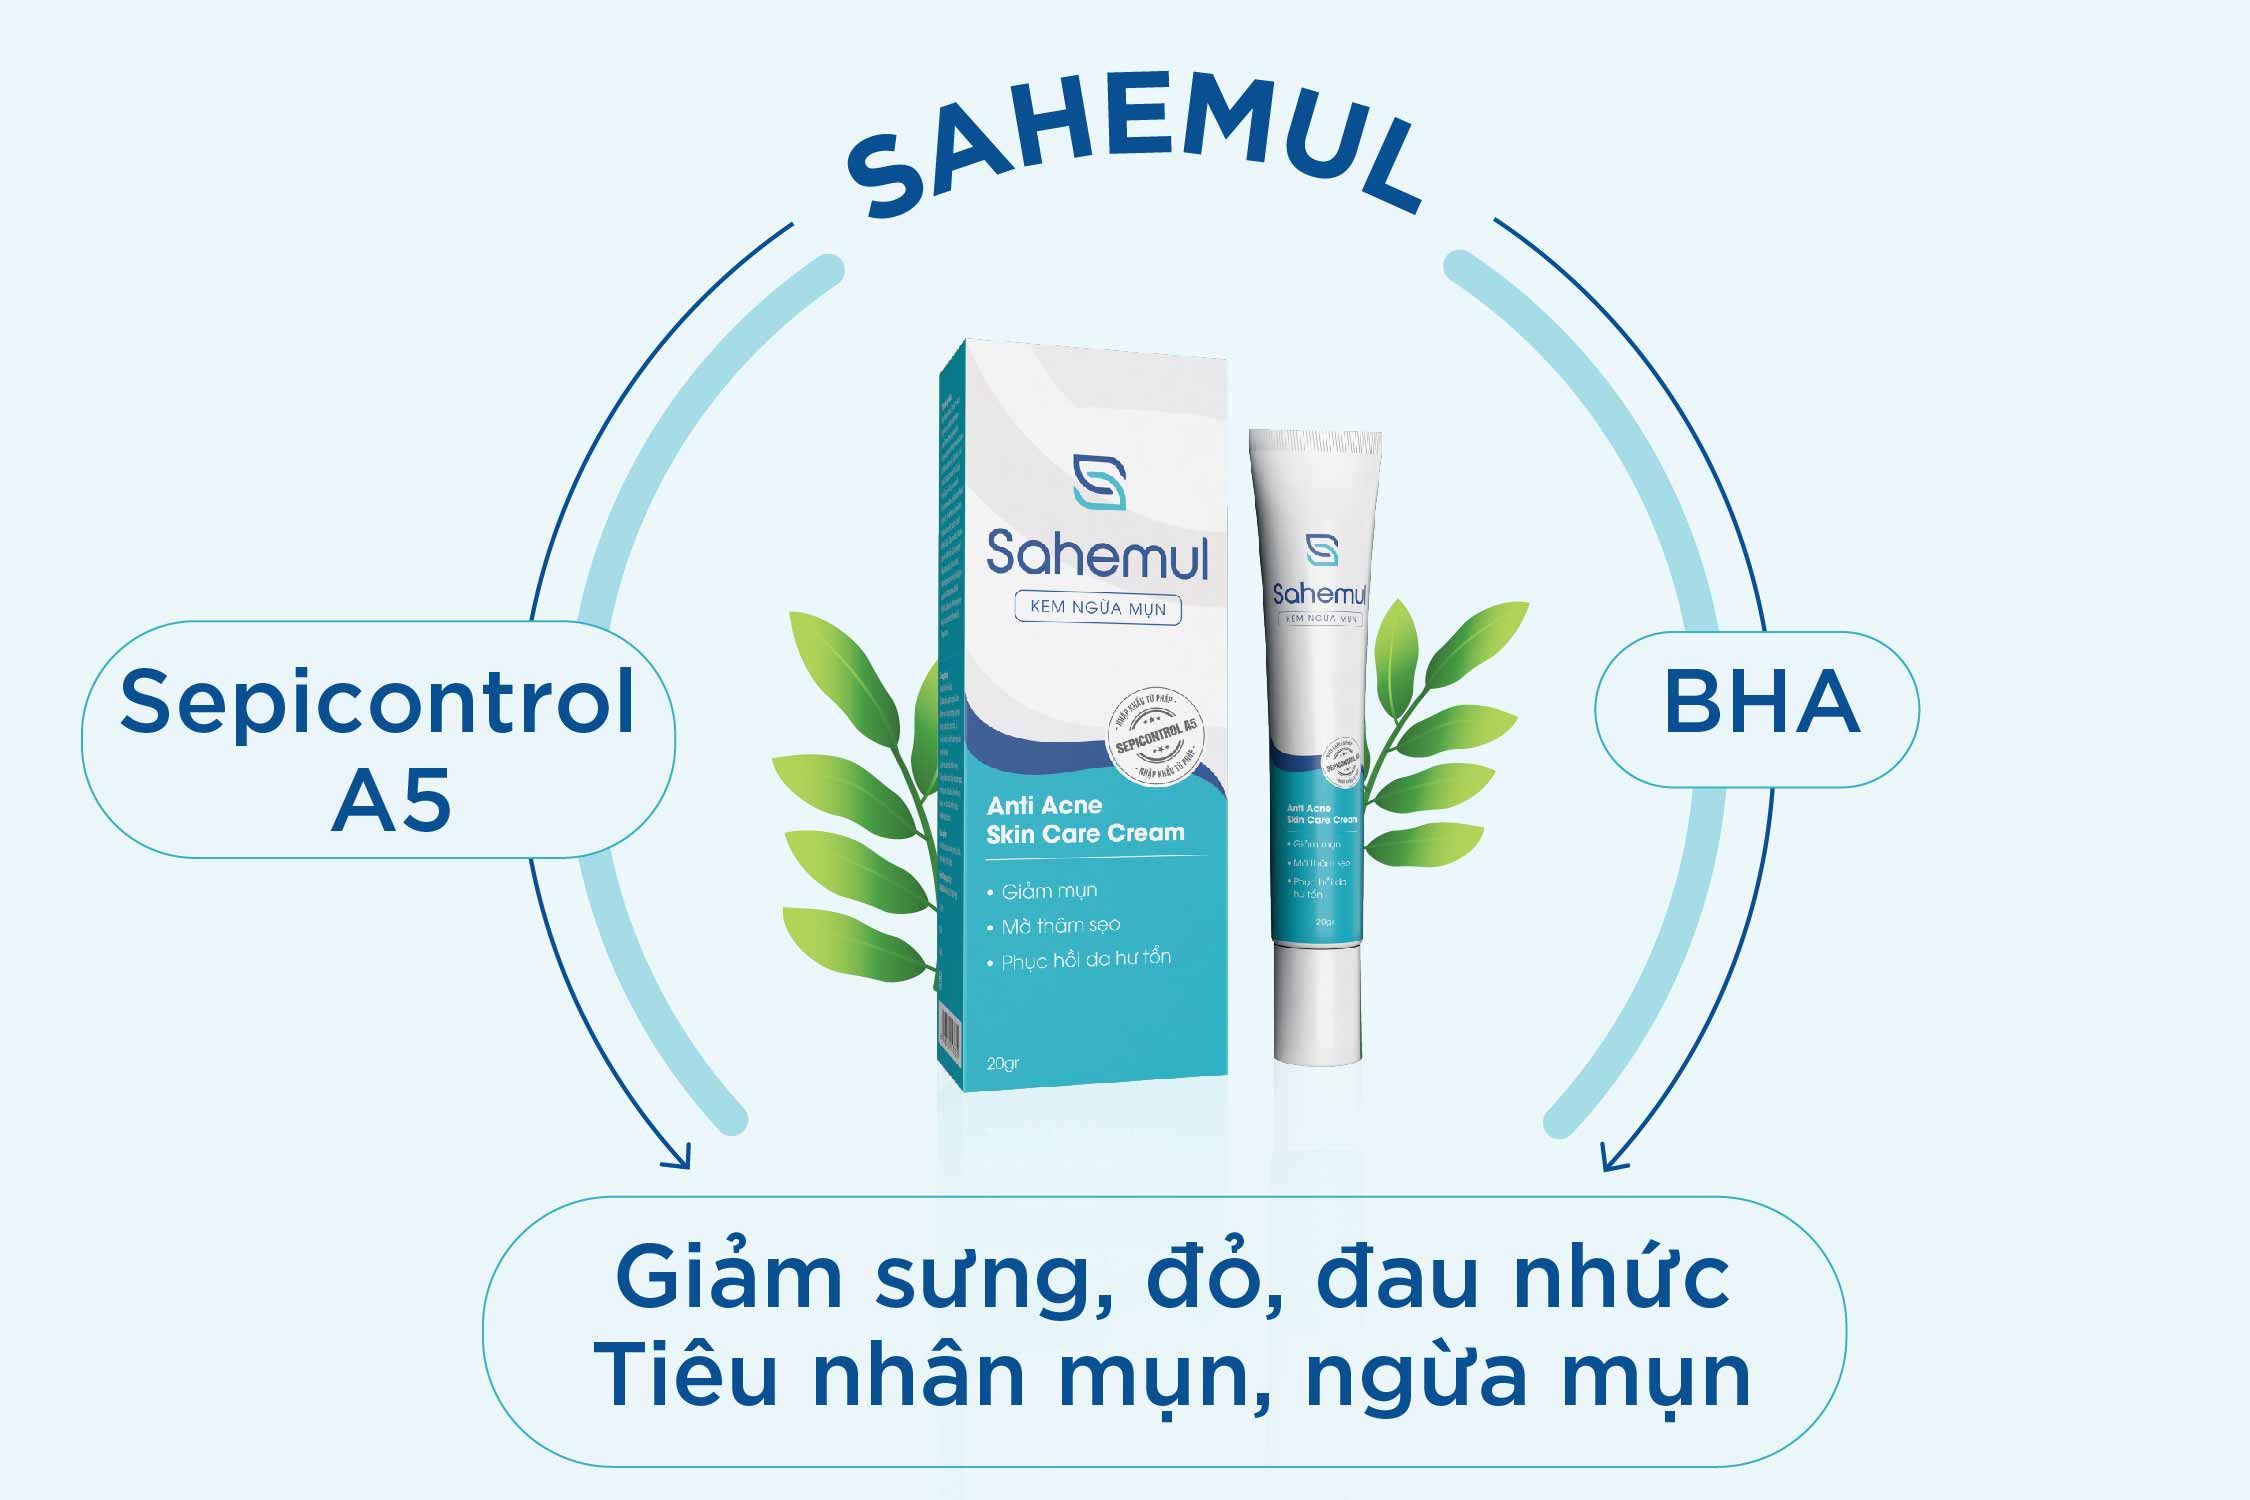 Sahemul chứa Sepicontrol A5 và BHA